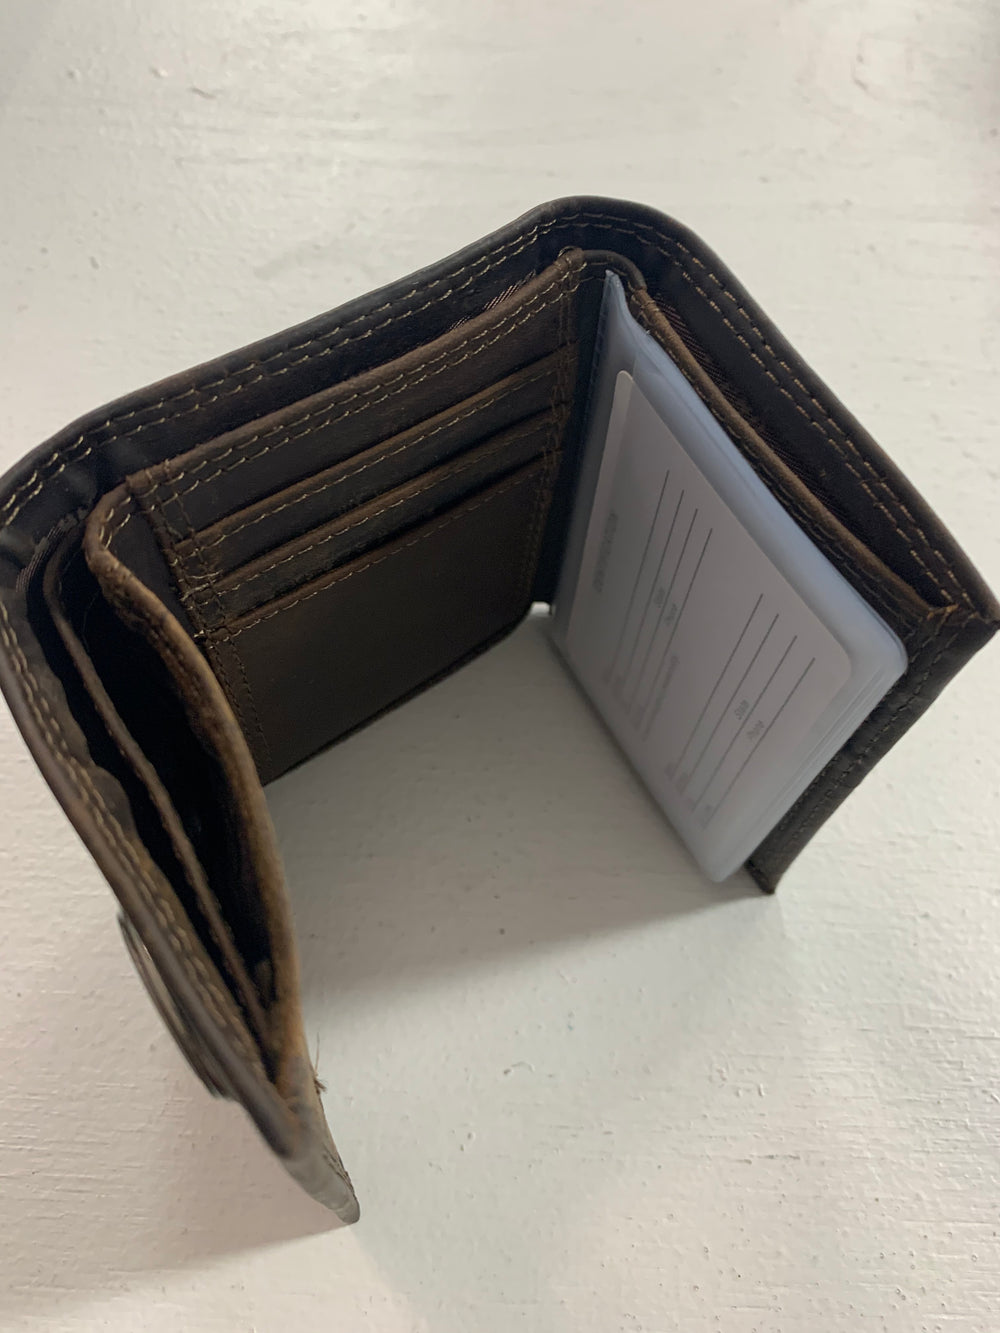 Zep-Pro | Men's Leather Tri-fold Wallet